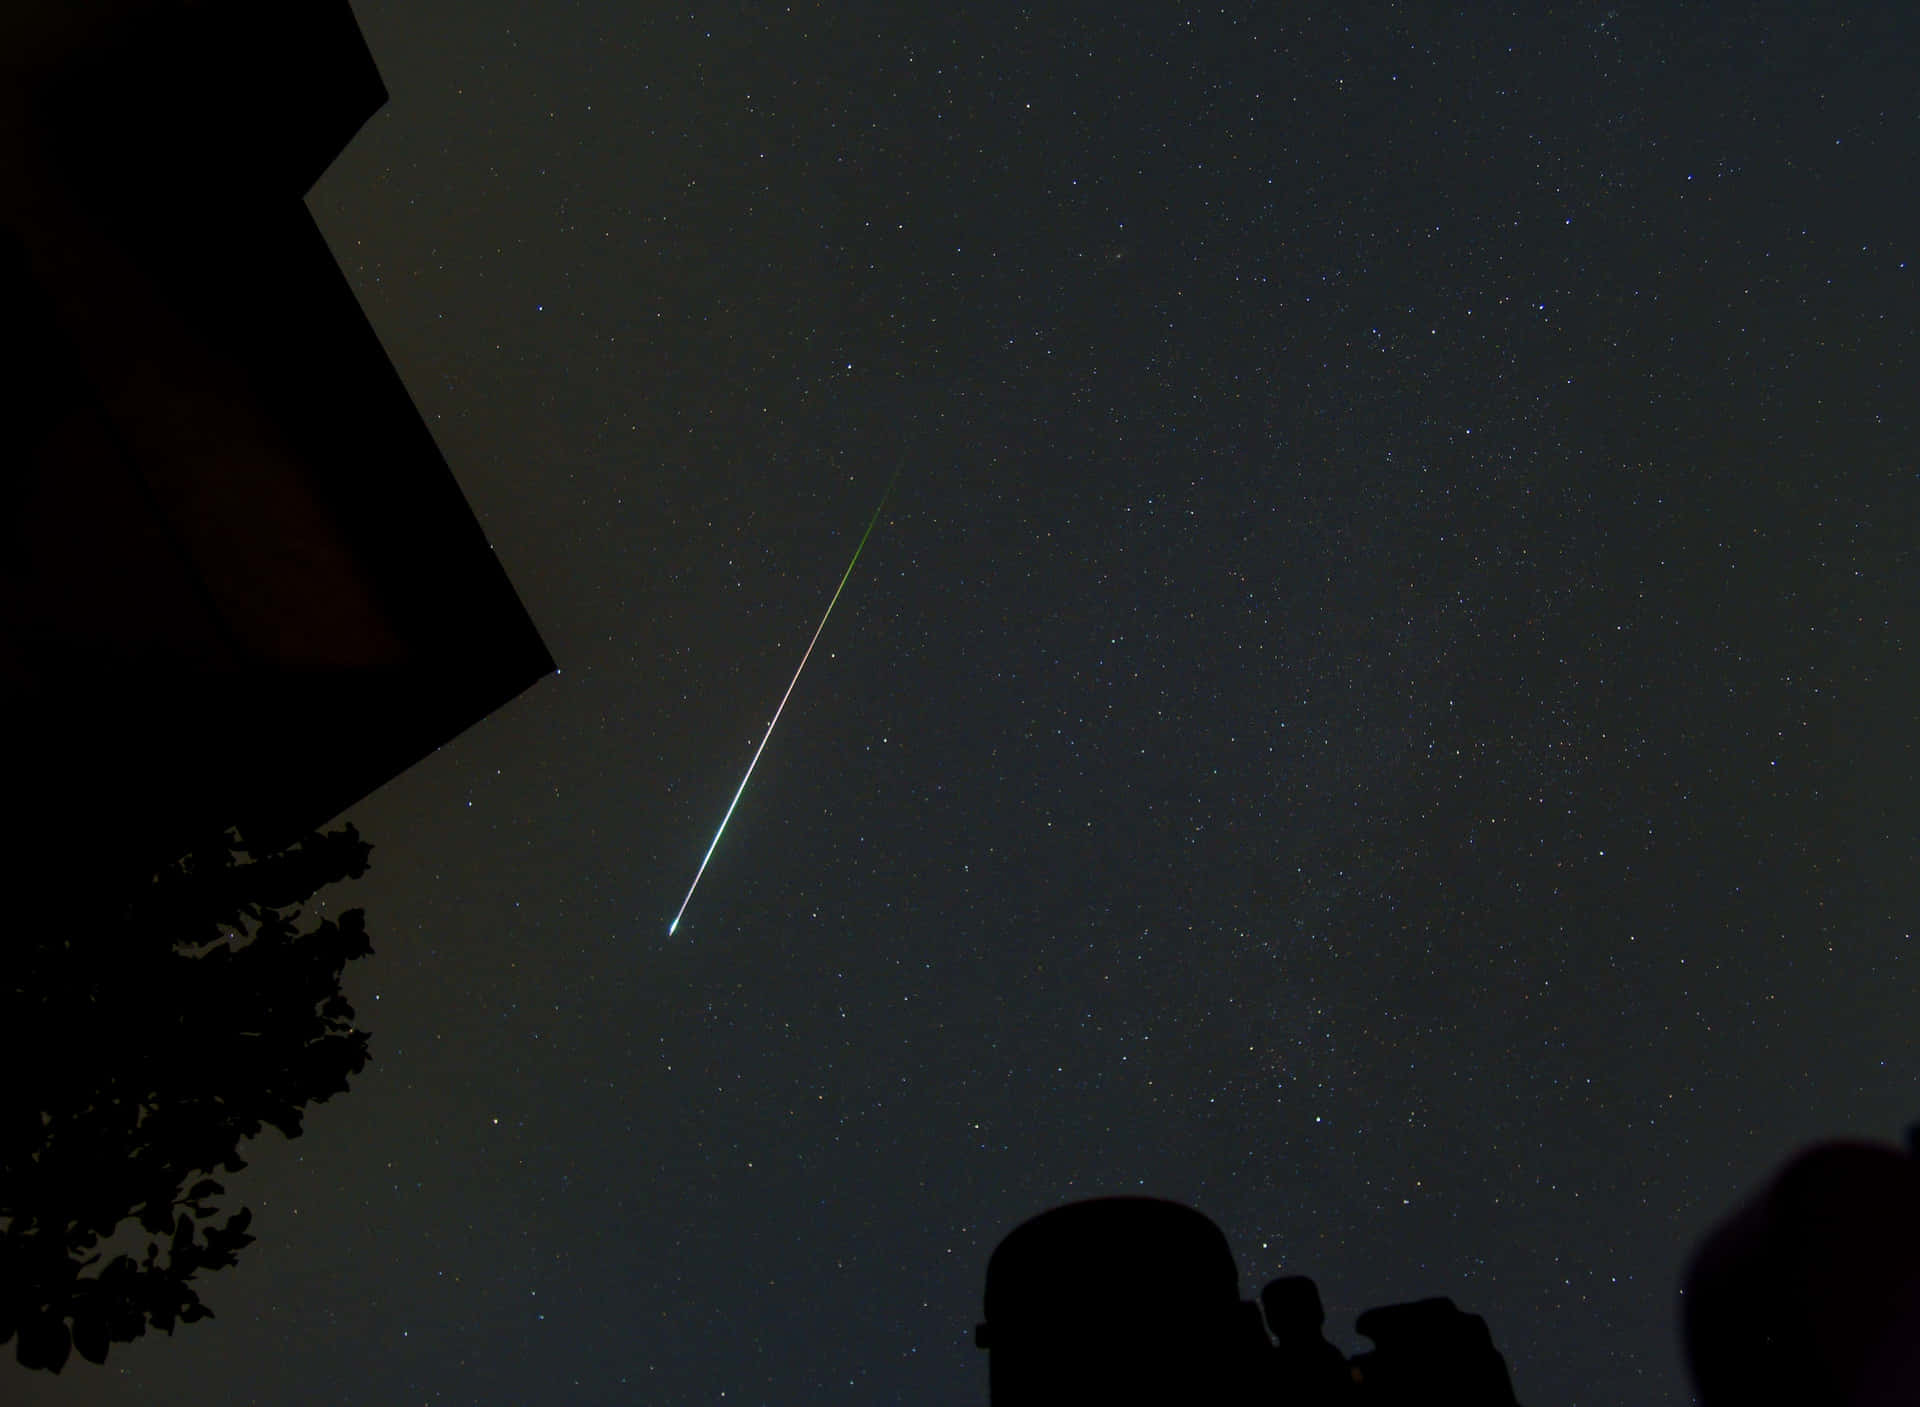 Impresionantelluvia De Meteoros Iluminando El Cielo Nocturno Fondo de pantalla